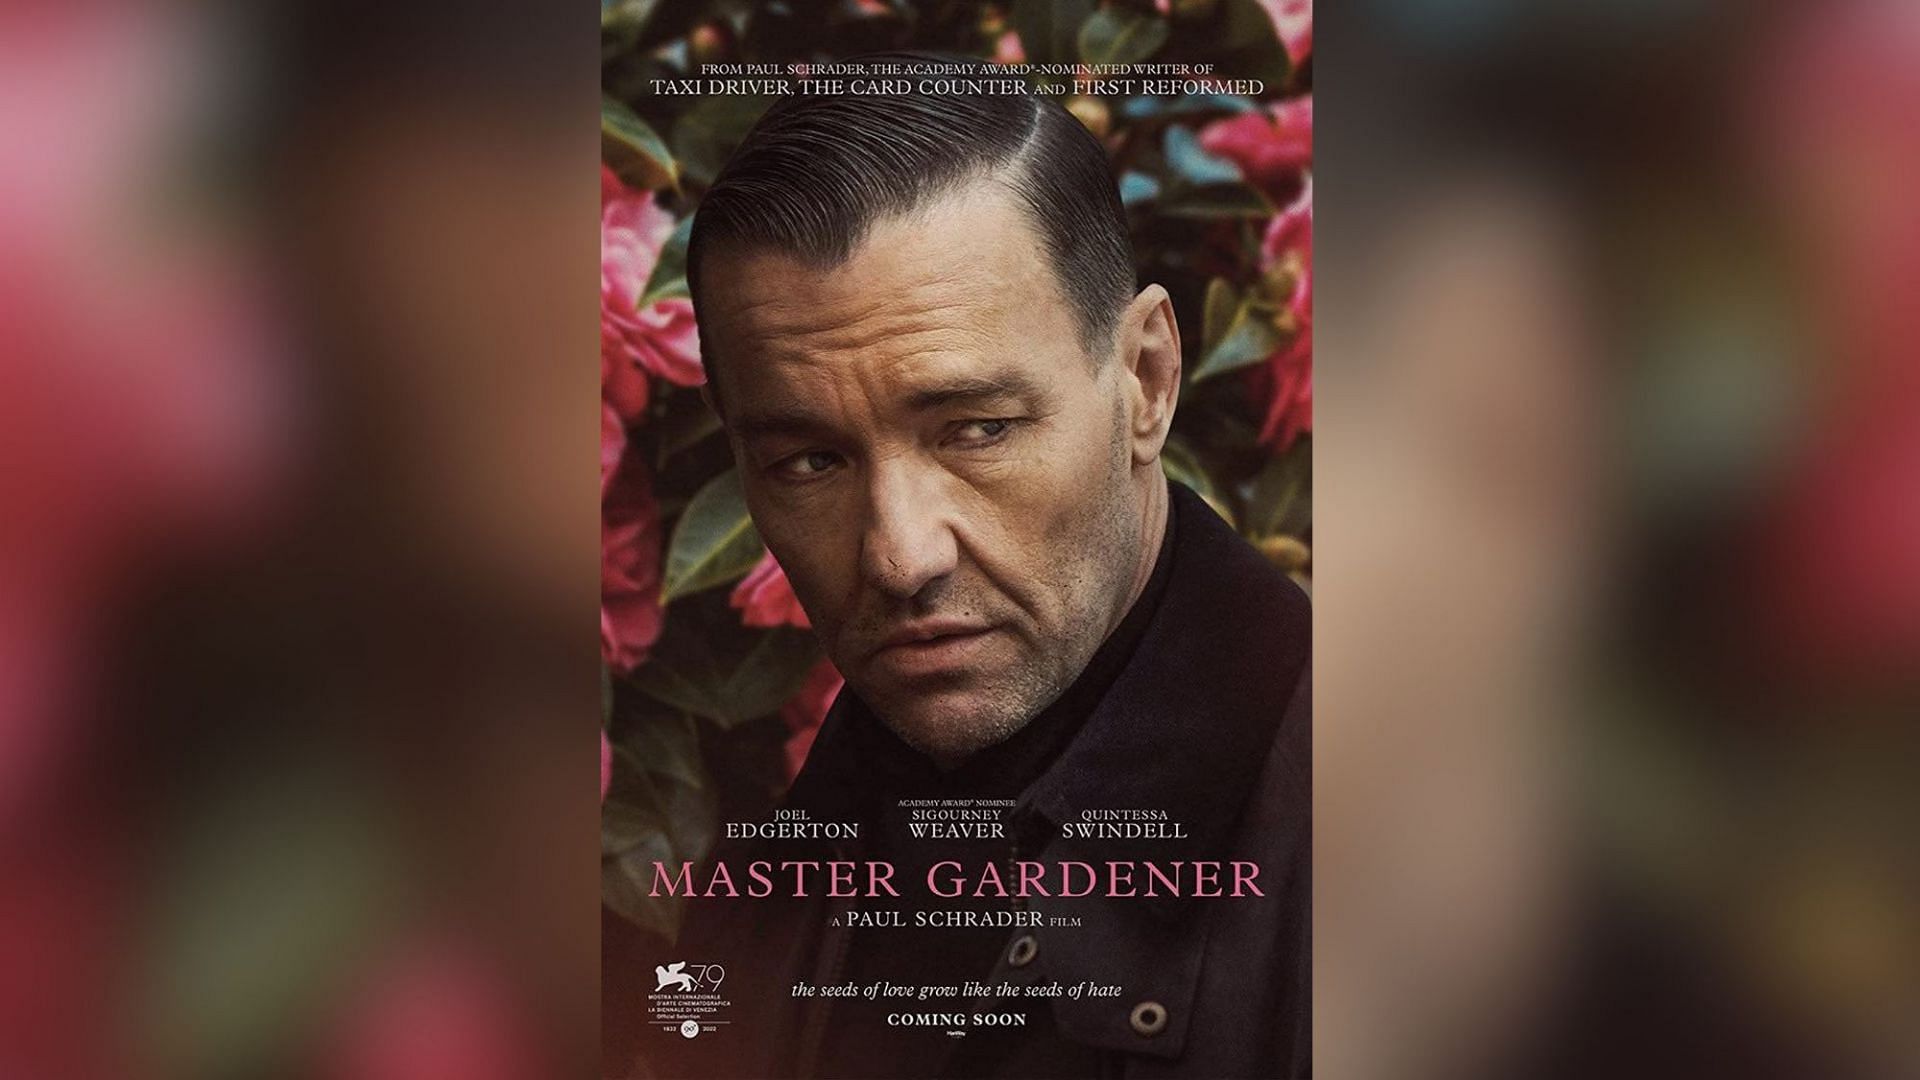 Master Gardner (Image via Magnolia Pictures)